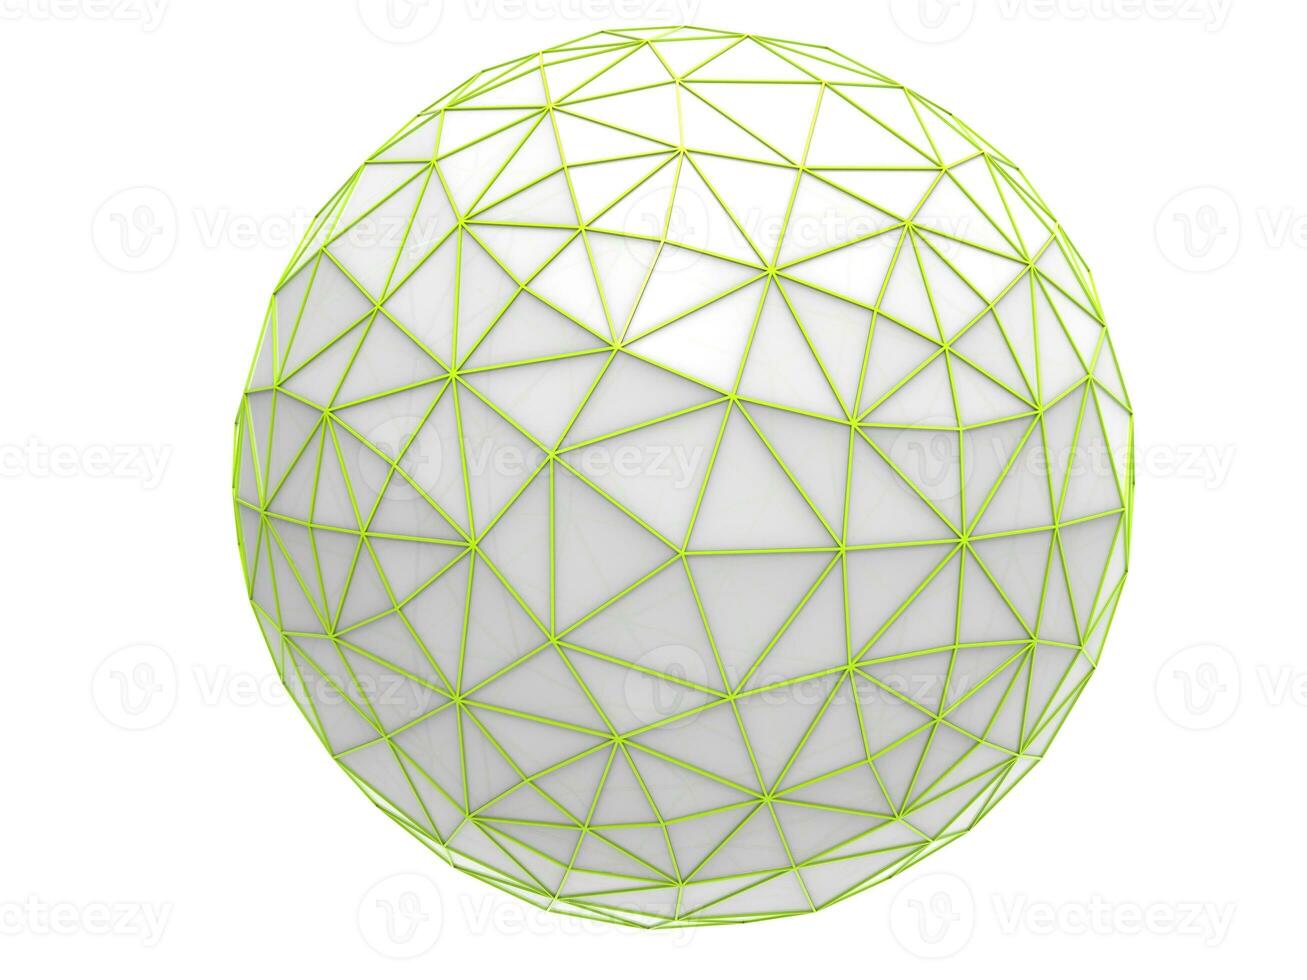 vit låg poly sfär med grön geometrisk strukturer på den foto